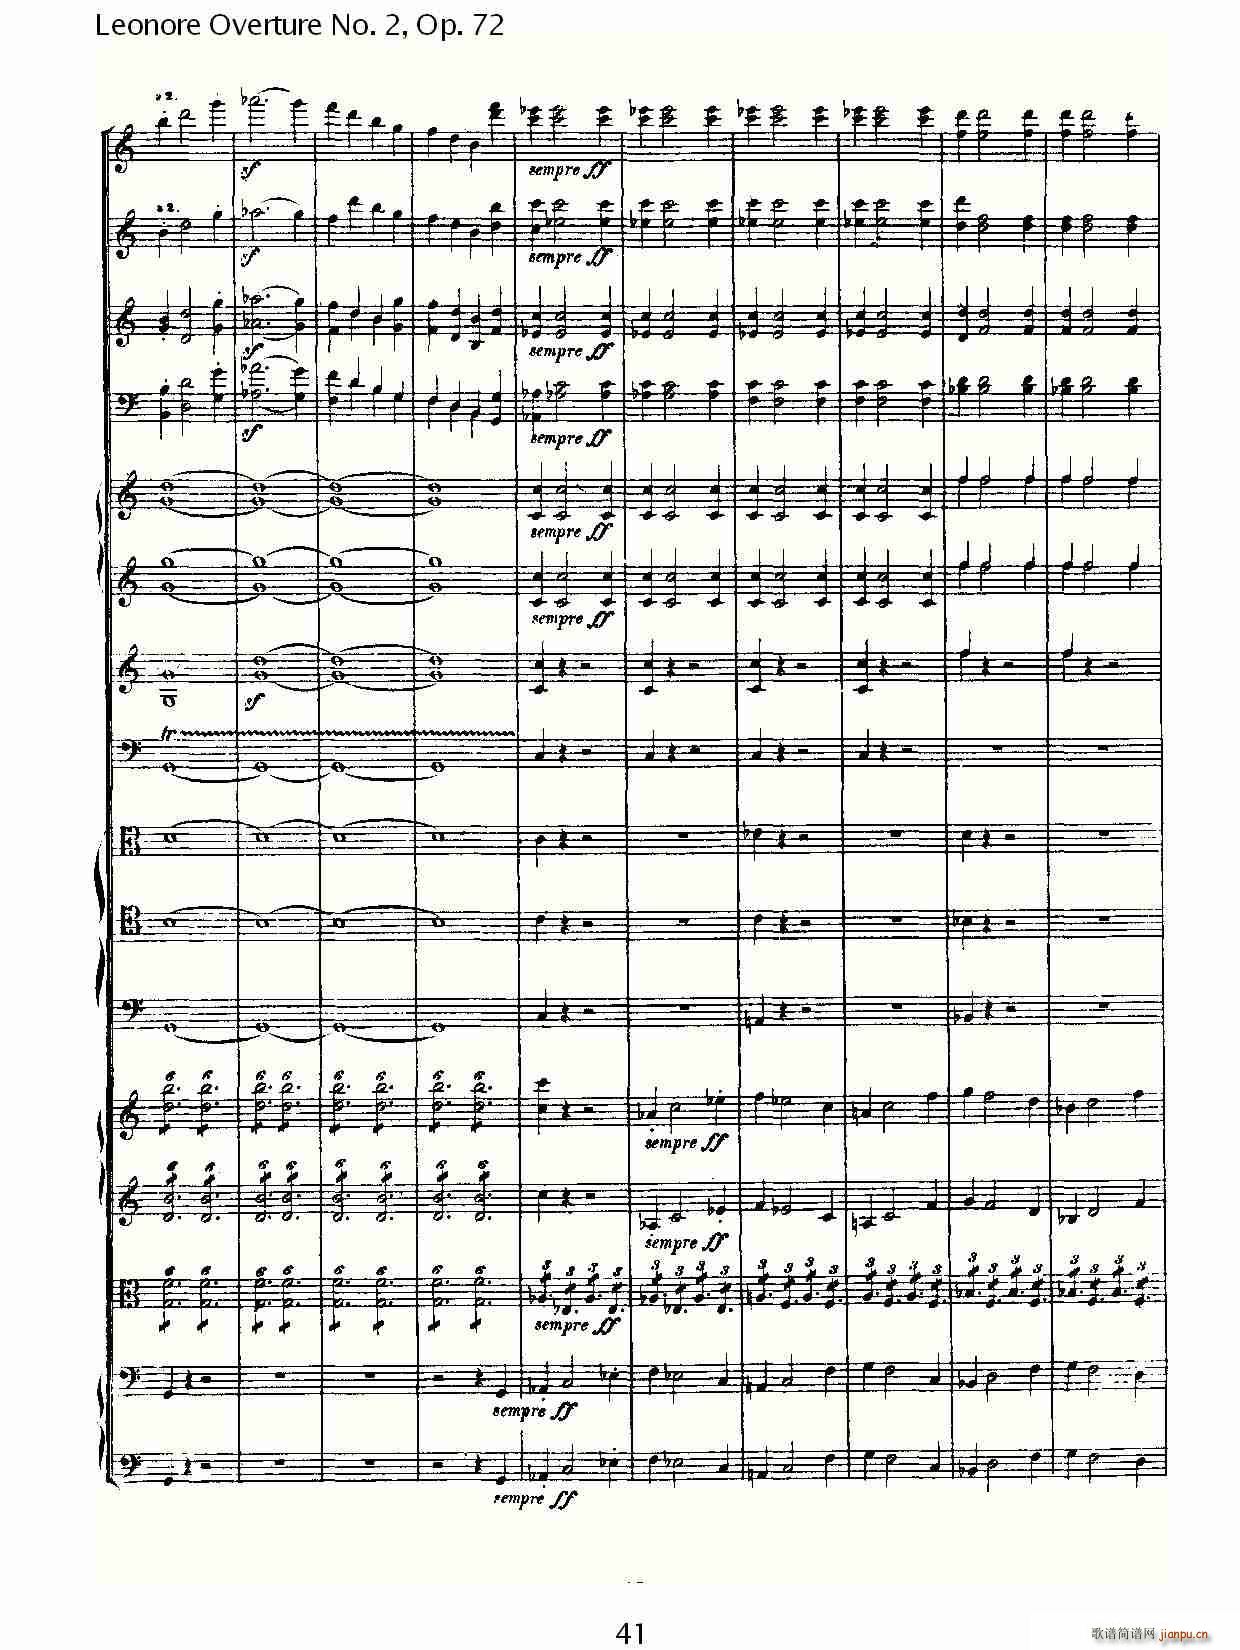 Leonore Overture No. 2Op. 72(ʮּ)1